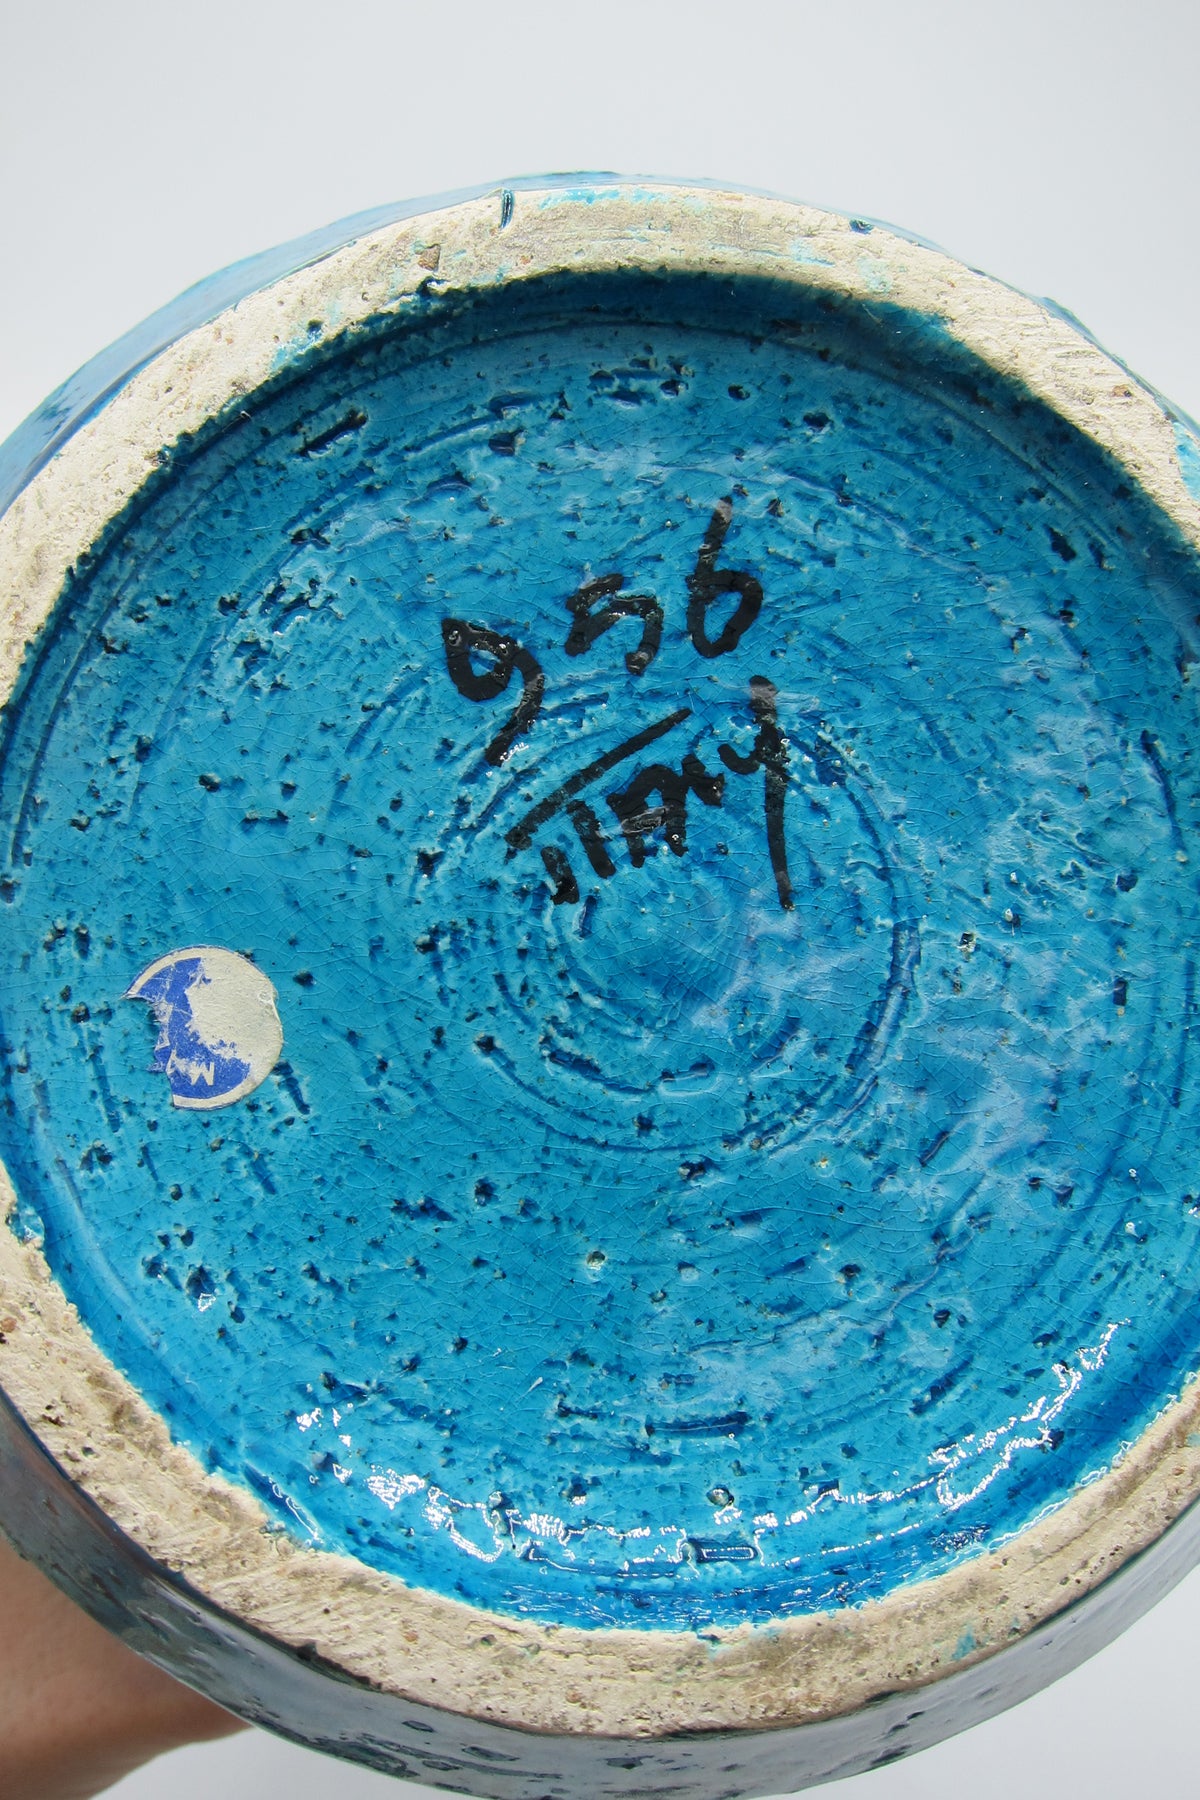 Vintage Blue Bitossi Italian Ceramic Lidded Jar